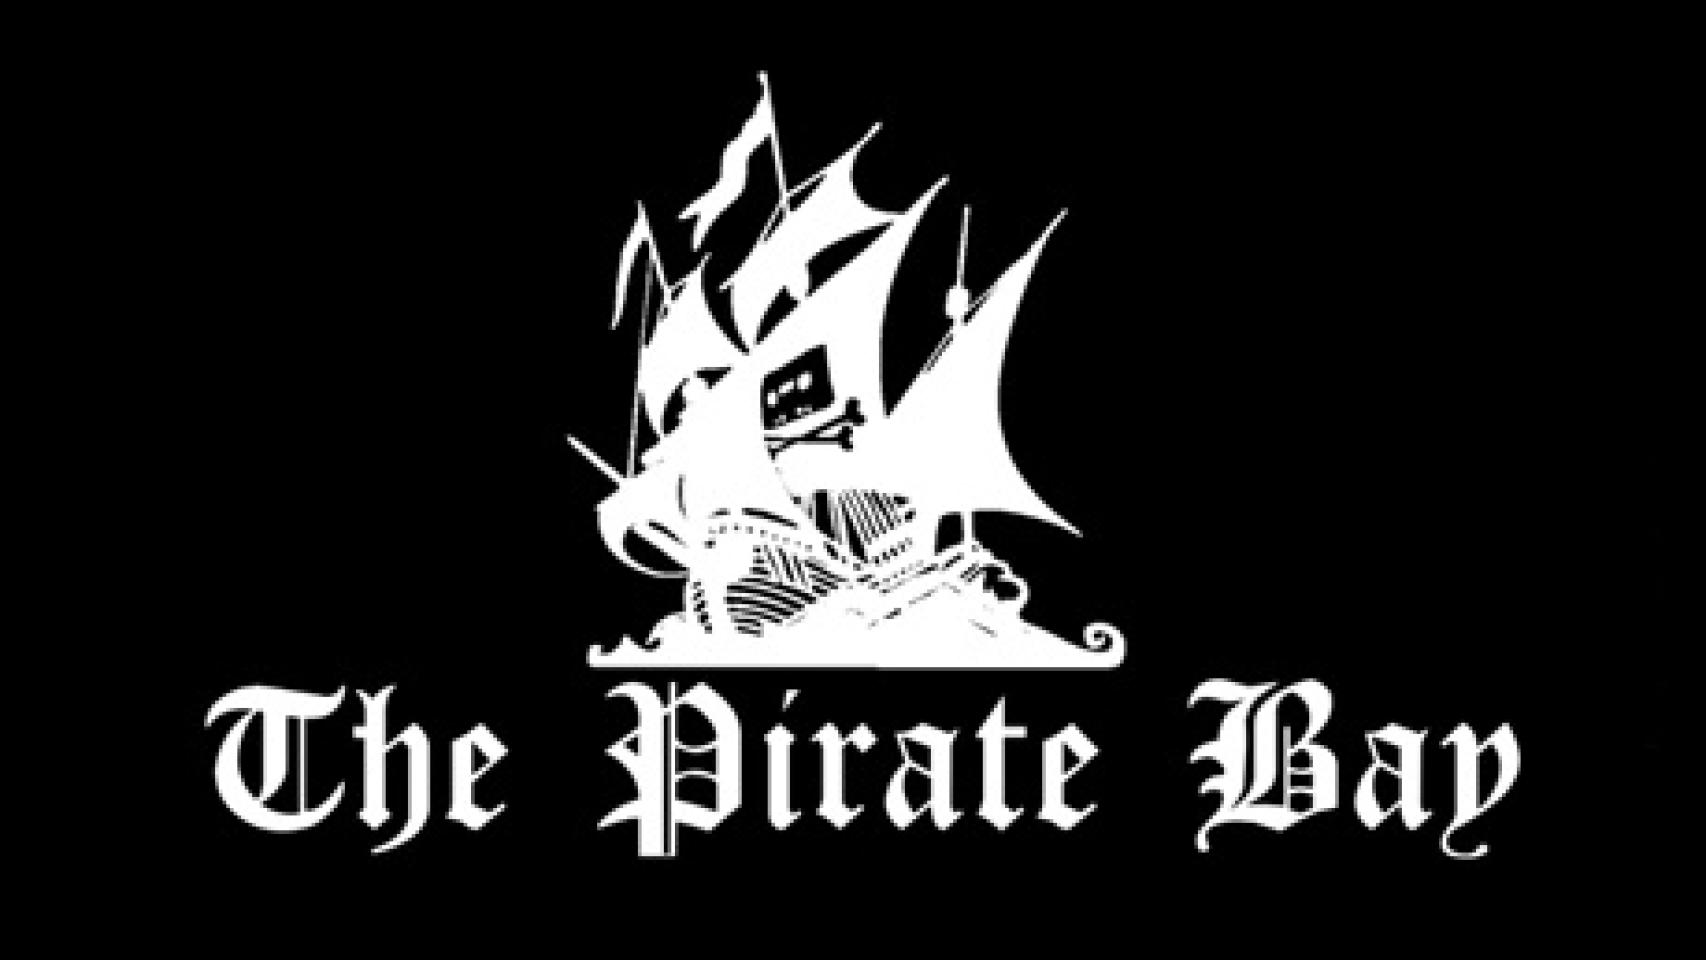 Las apps de The Pirate Bay eliminadas de Google Play